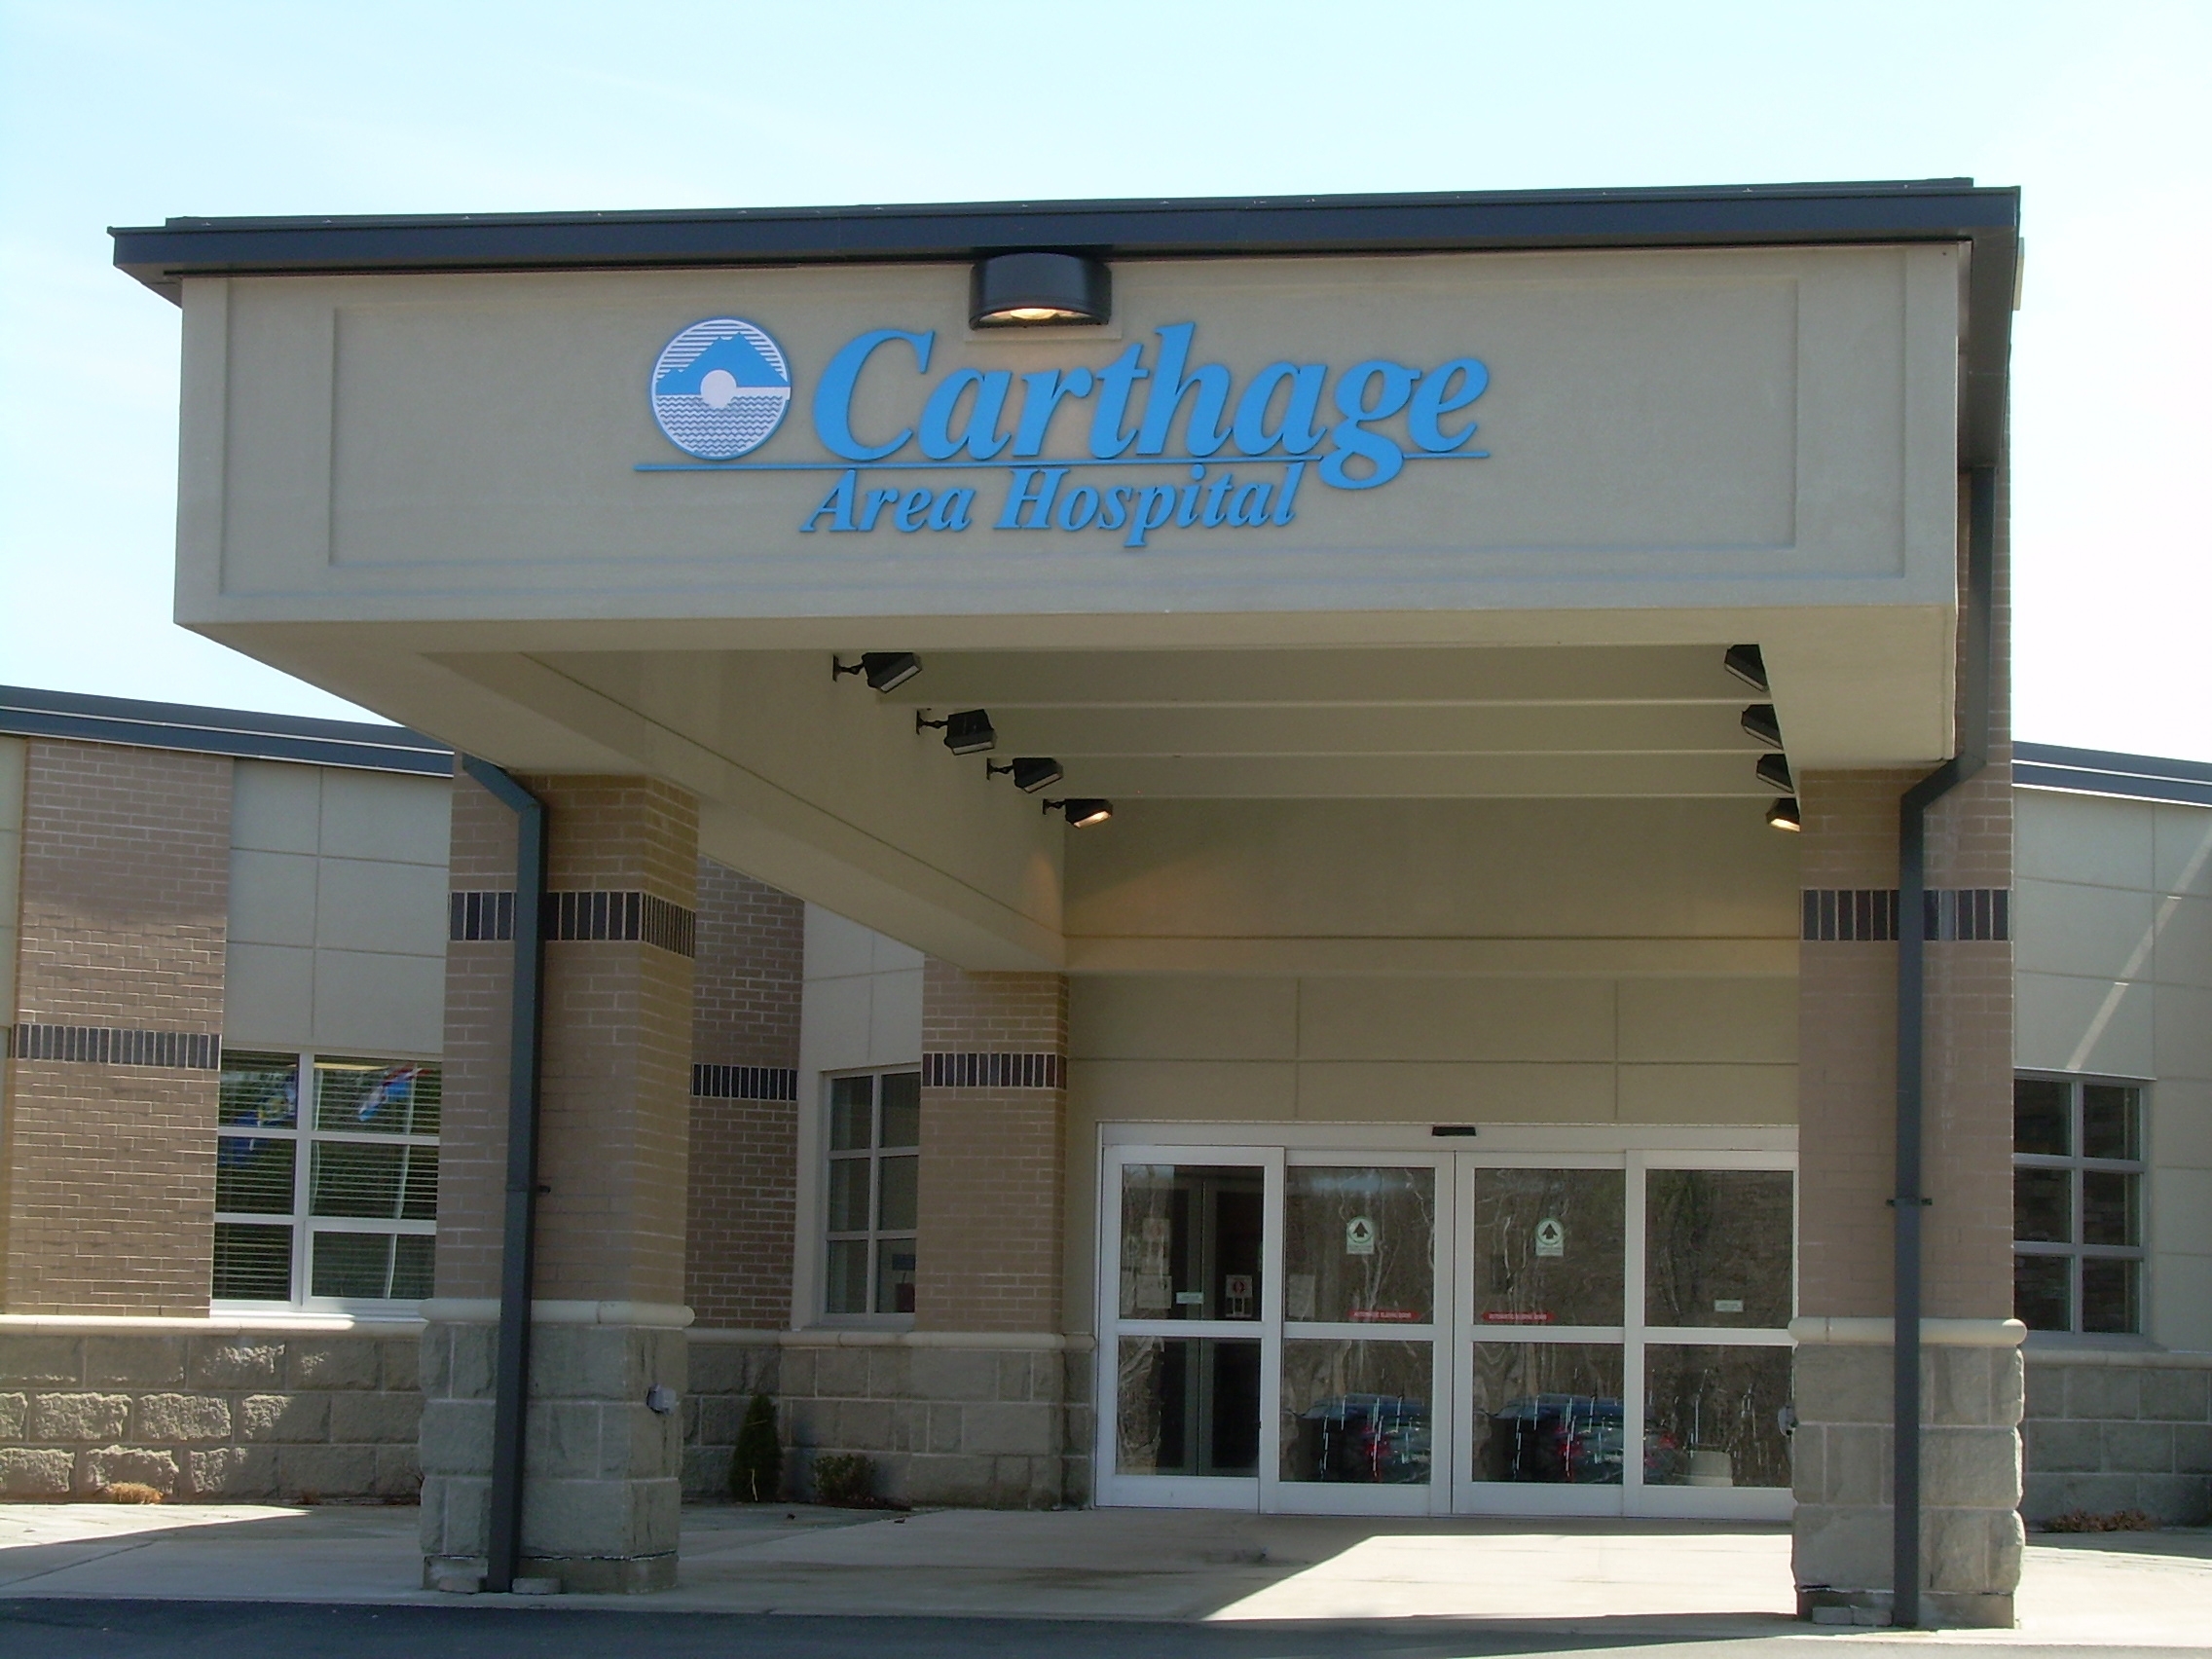 Carthage Behavioral Health Clinic - Carthage Area Hospital